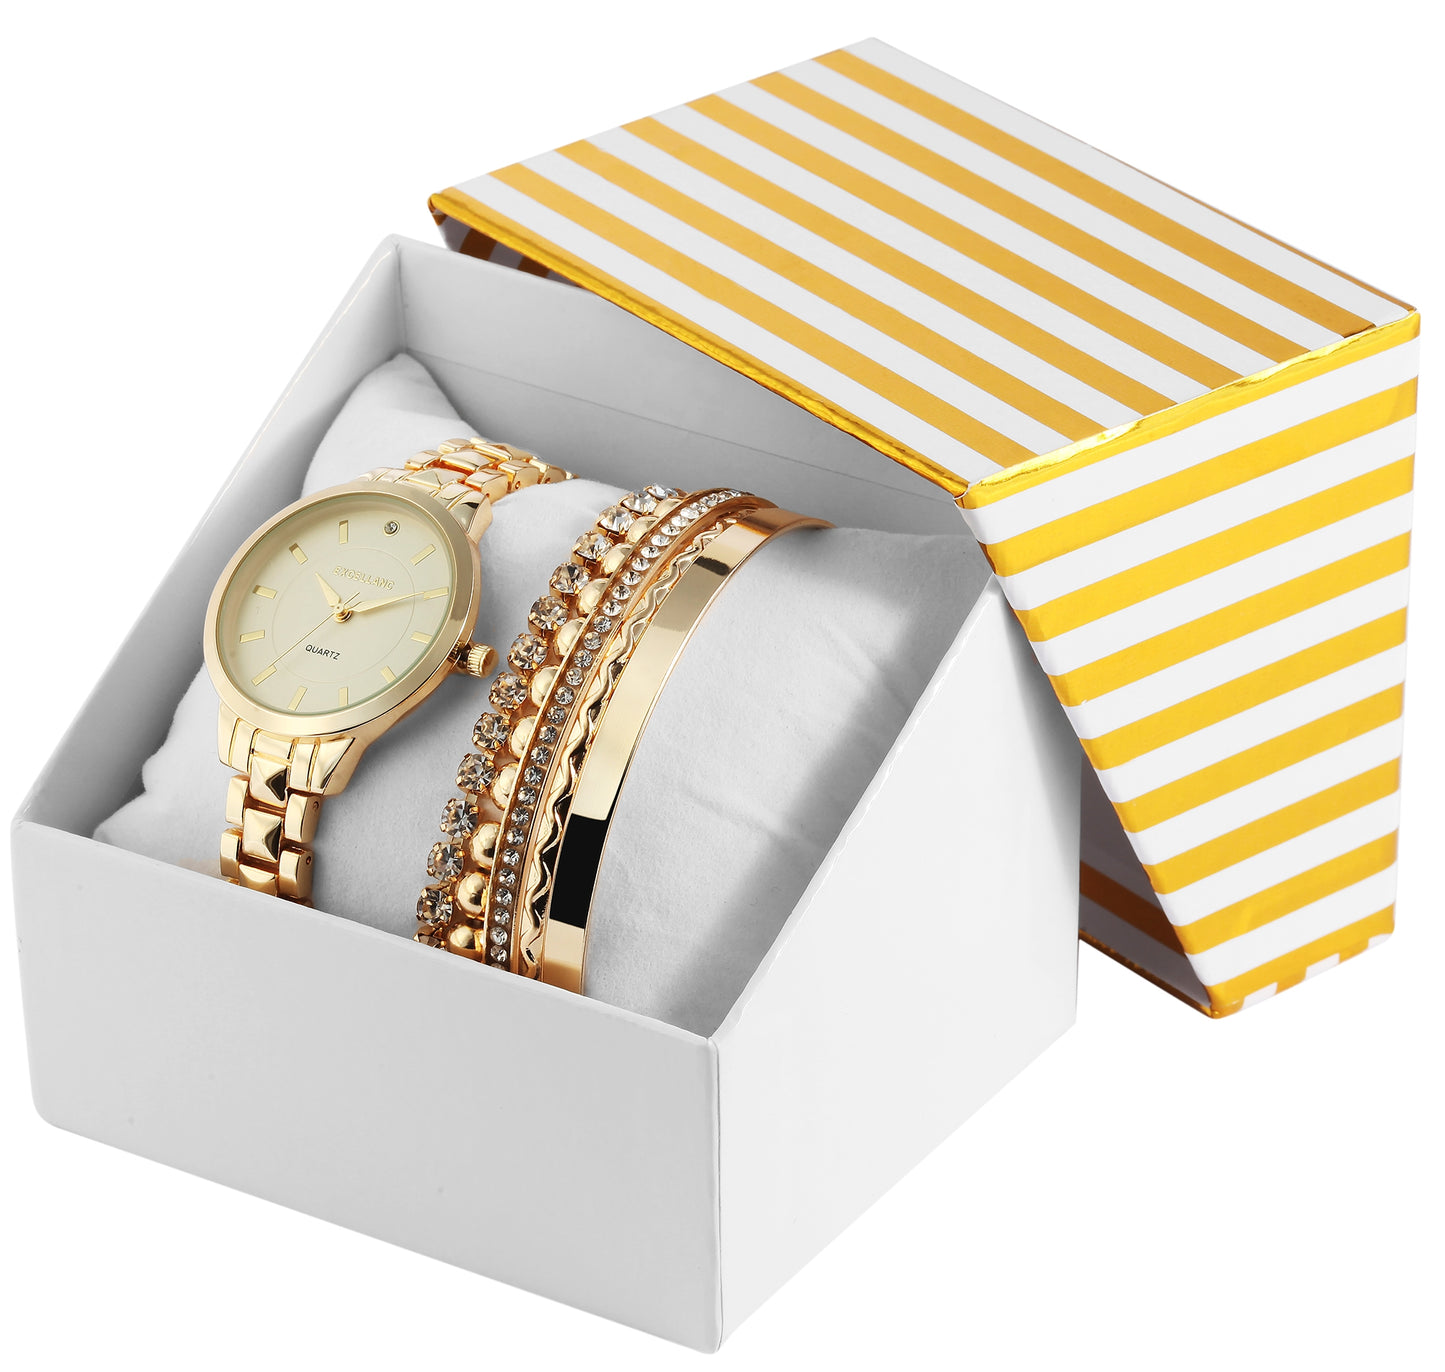 Excellanc dárkový set hodinek: dámské hodinky + 2 náramky, zlatý tón EX0423, zlatá barva, vysoce kvalitní křemenný mechanismus, ciferník žluté barvy